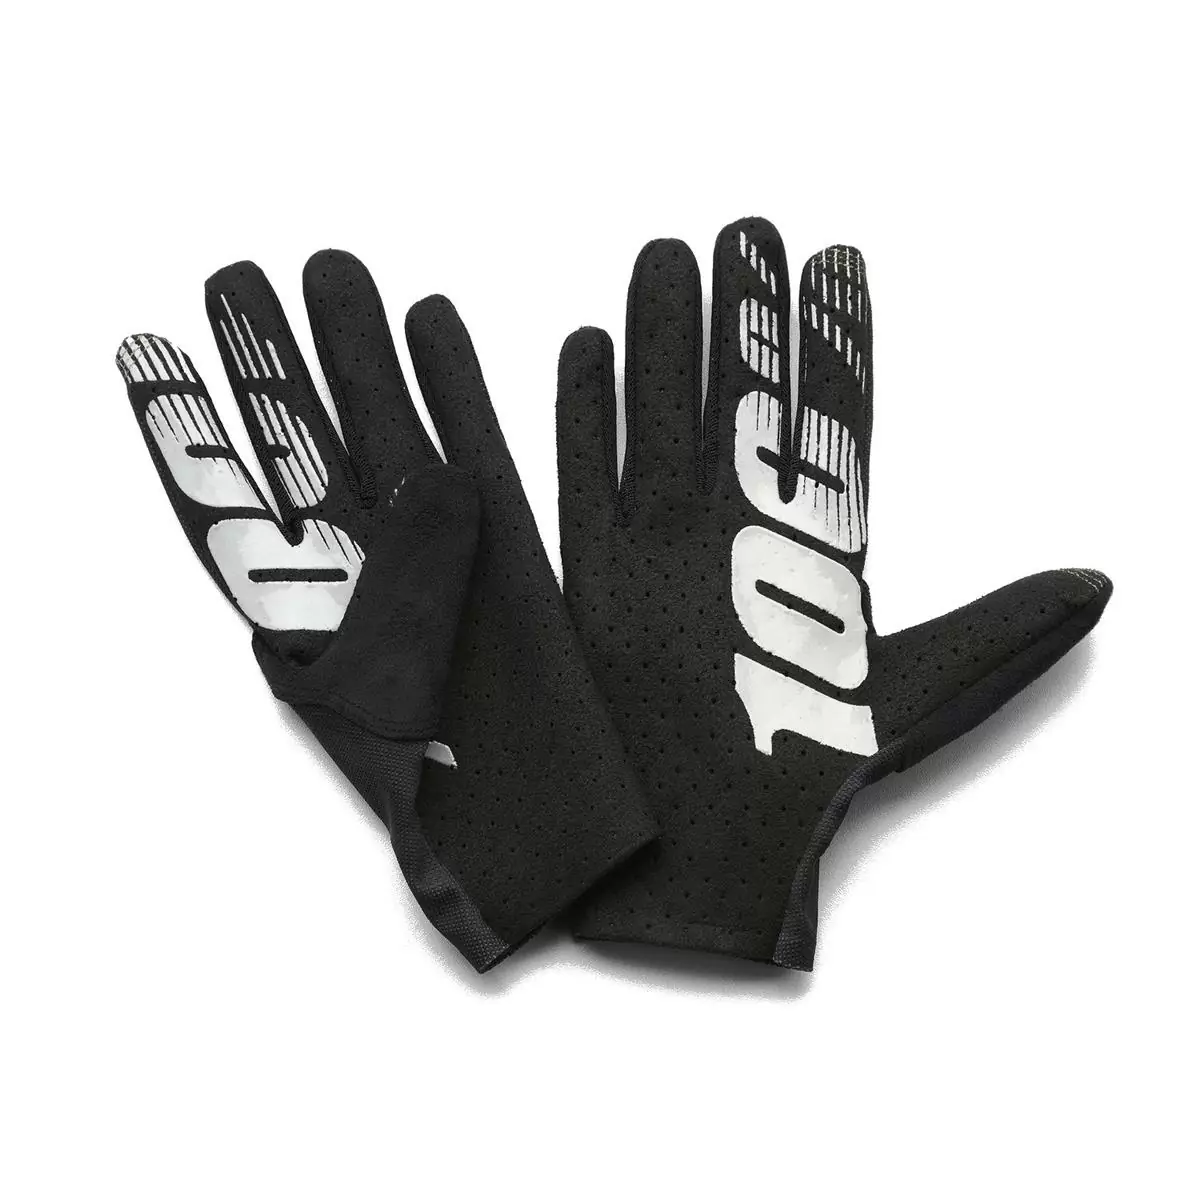 Handschuhe Celium Grau/Schwarz Größe M #1